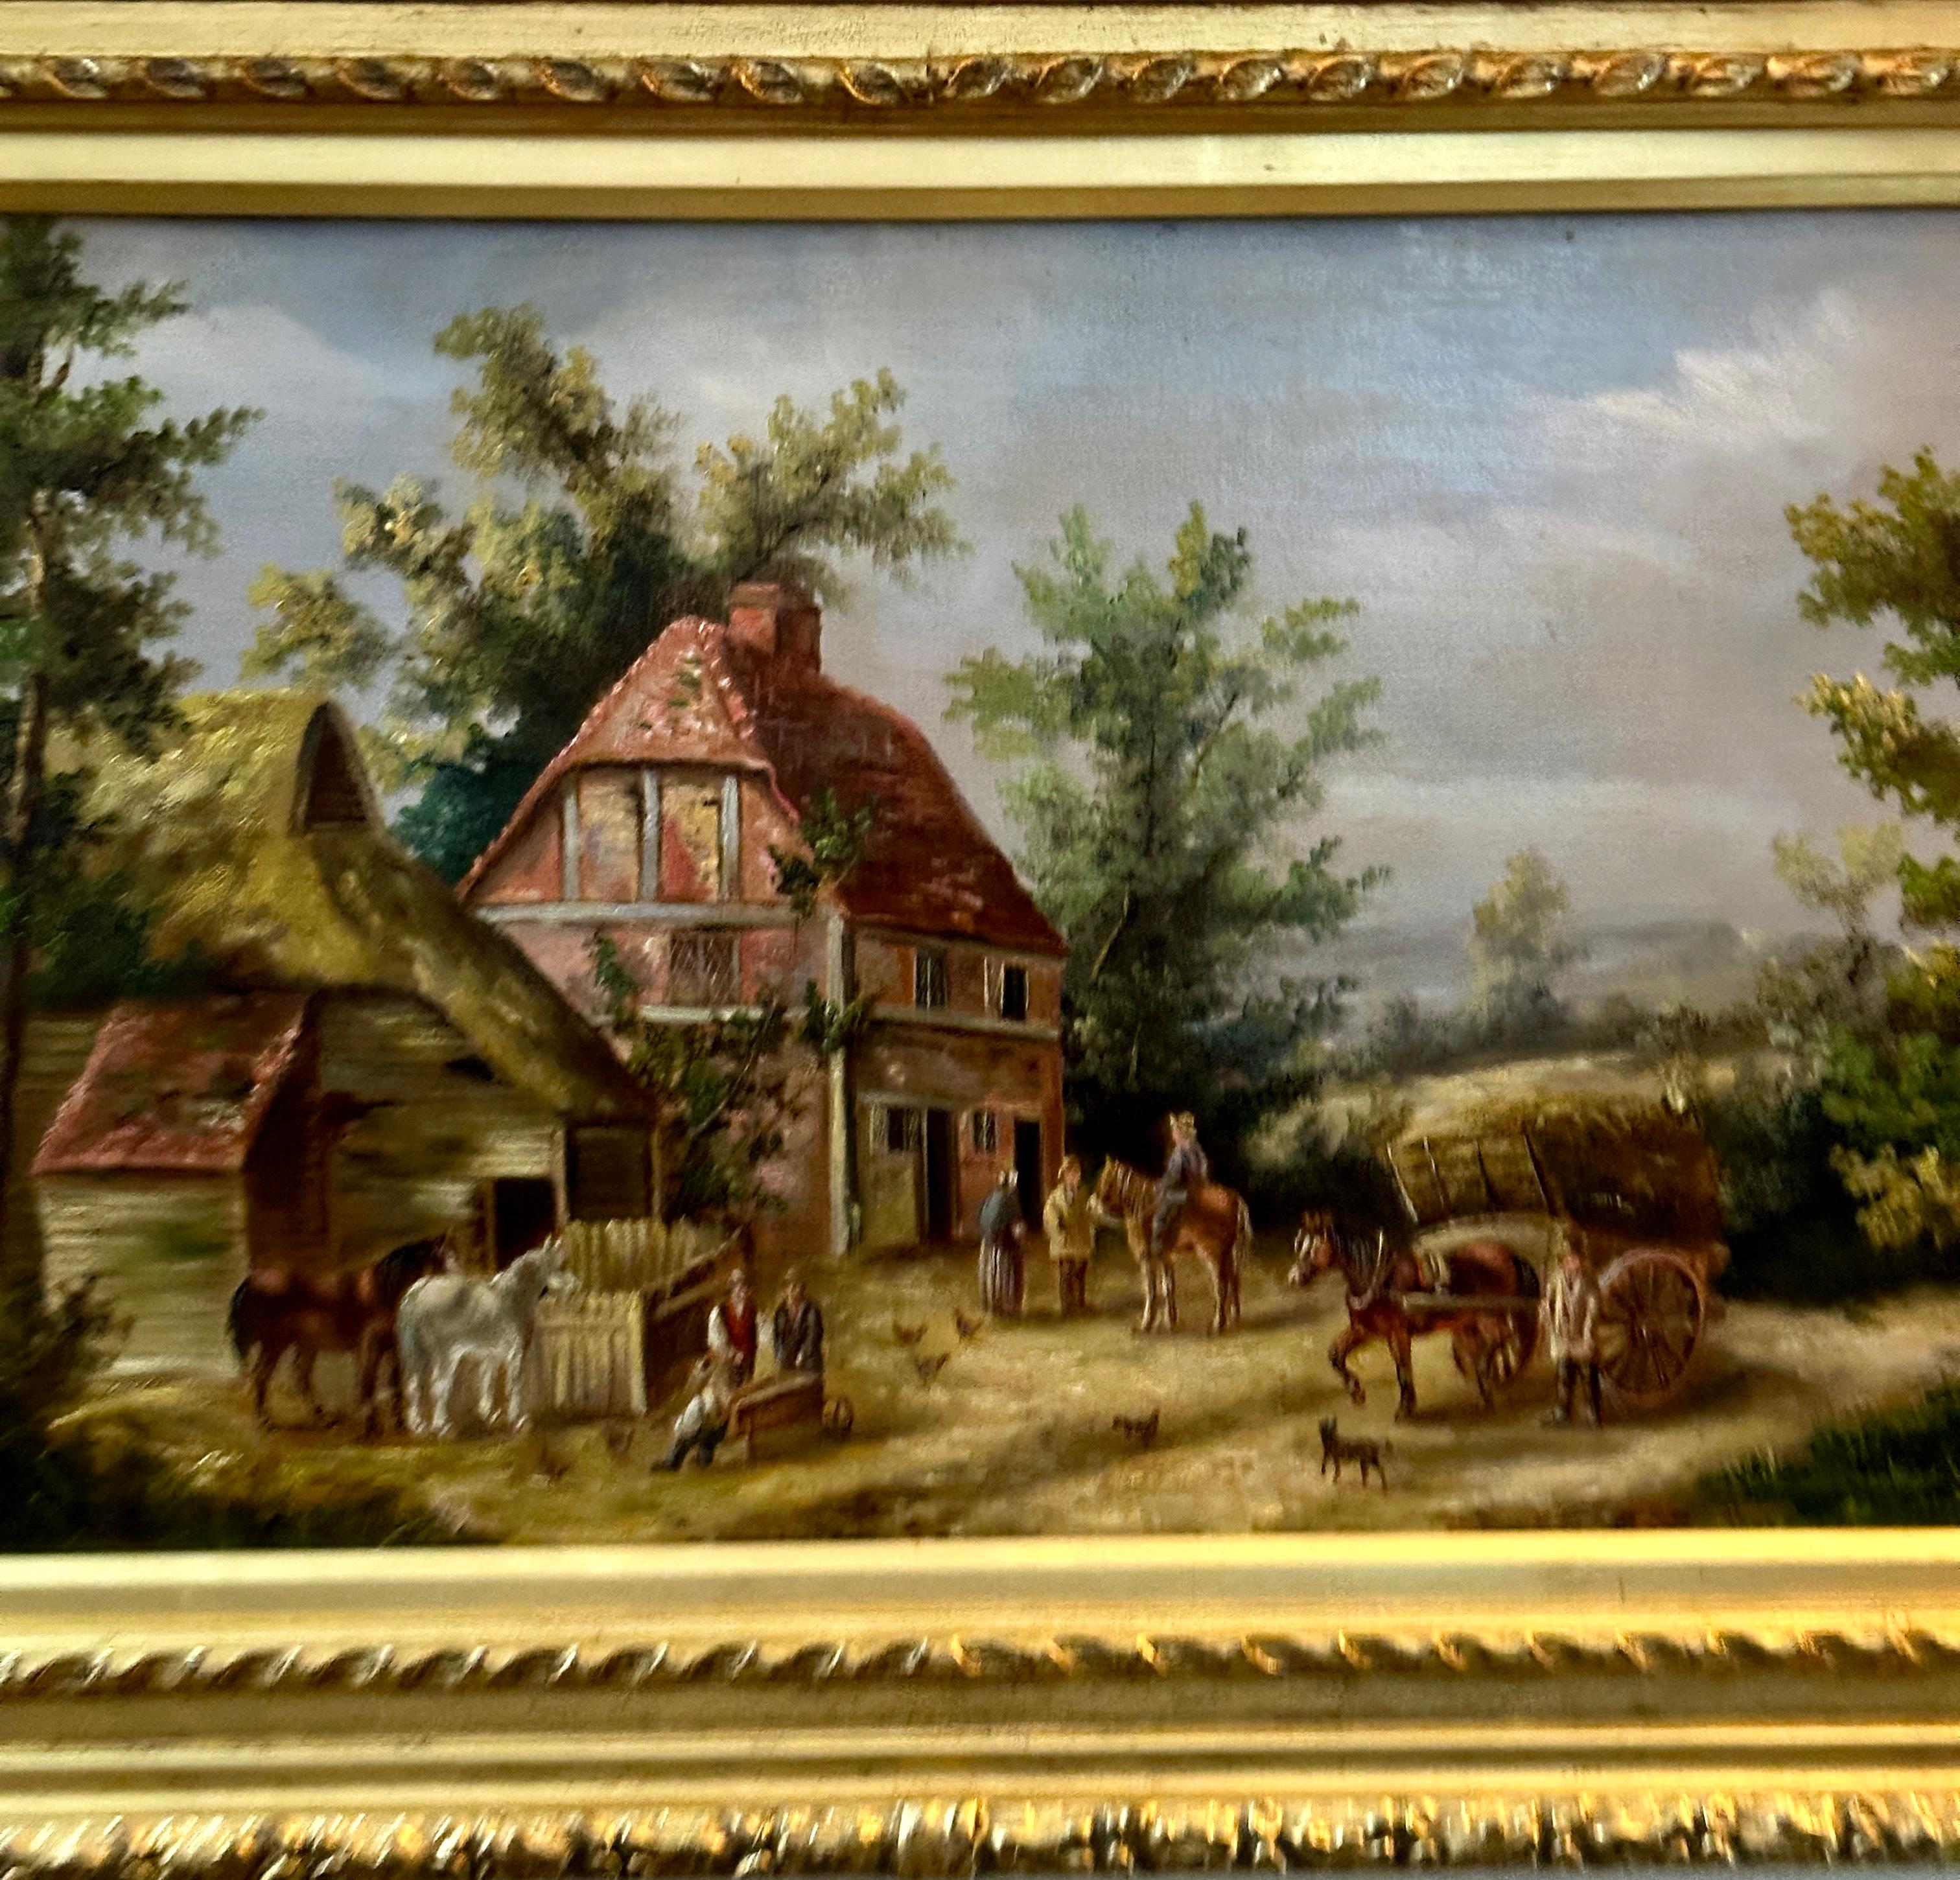 Englische Dorfszene aus dem 19. Jahrhundert mit Häusern, Pferdelandschaft und Menschen – Painting von Georgina Lara